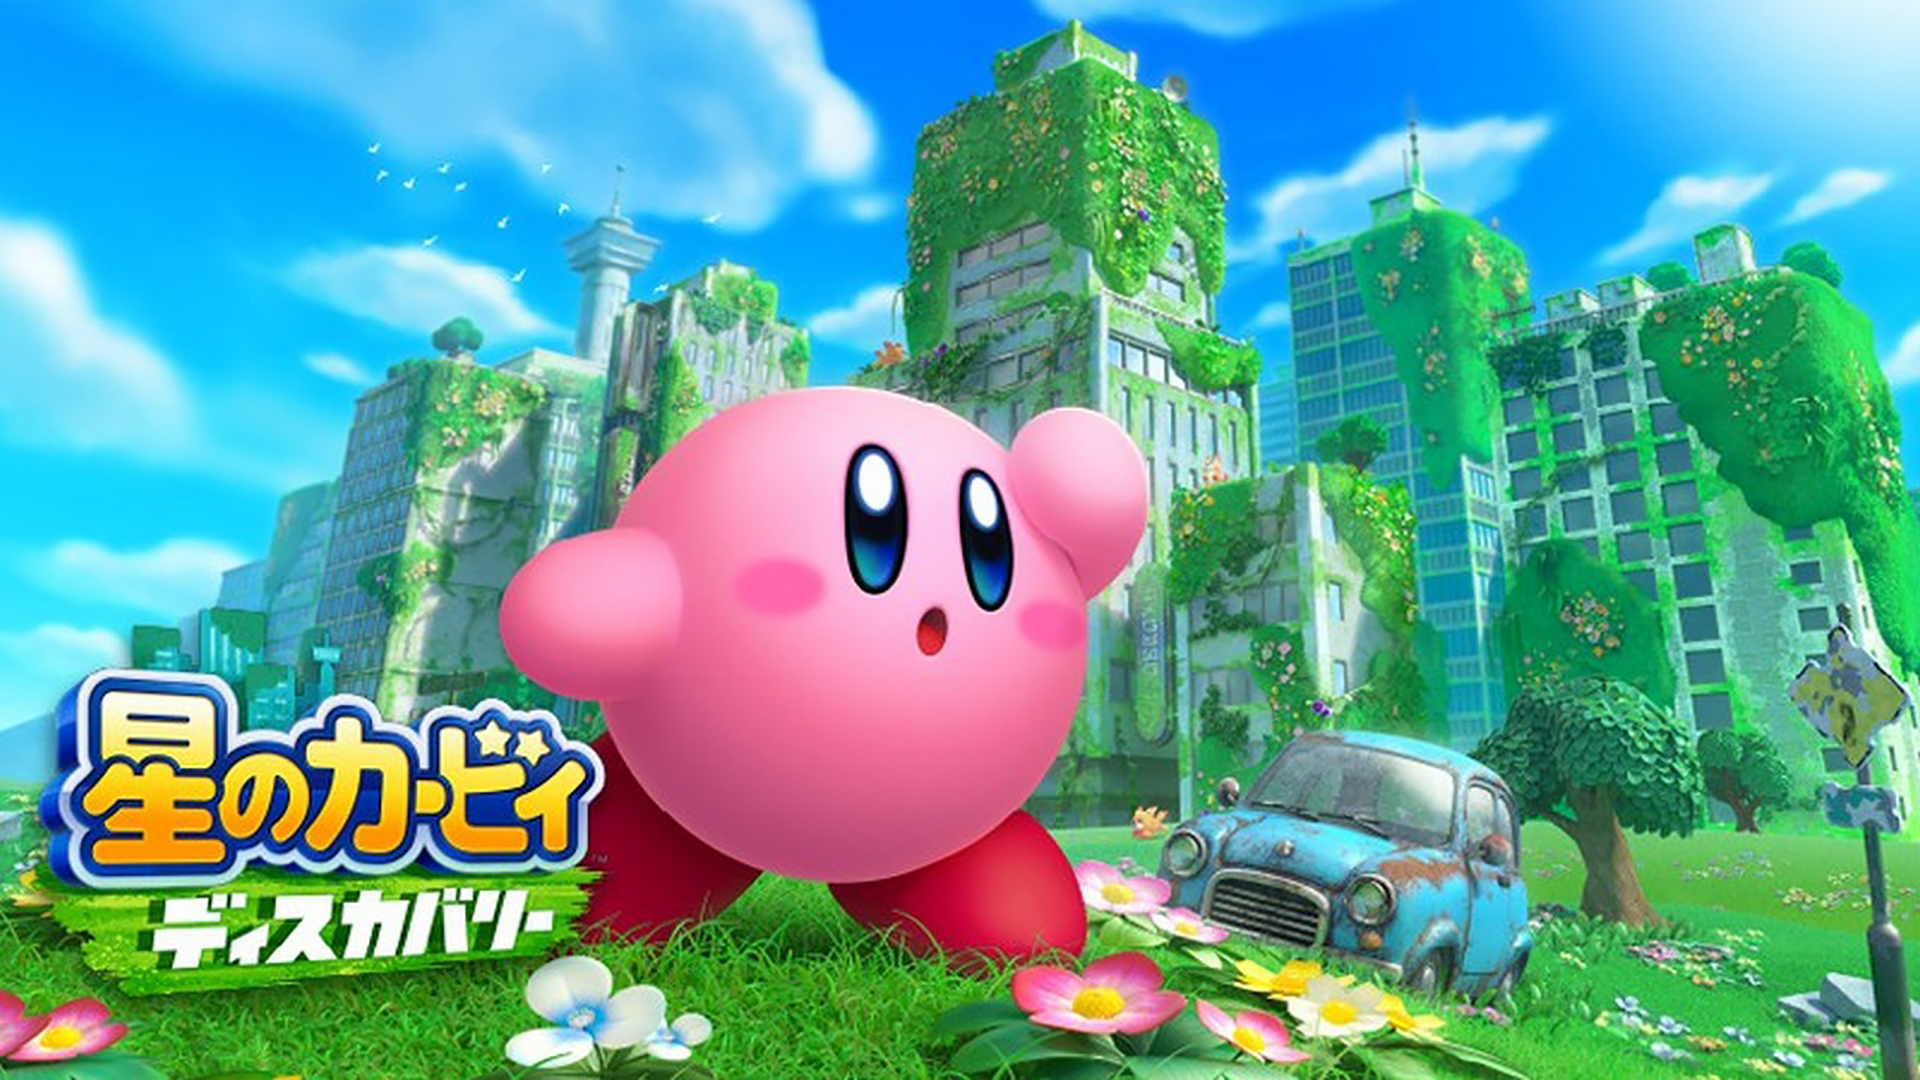 หลุดวันวางจำหน่ายของ Kirby: Discovery และ Bayonetta 3